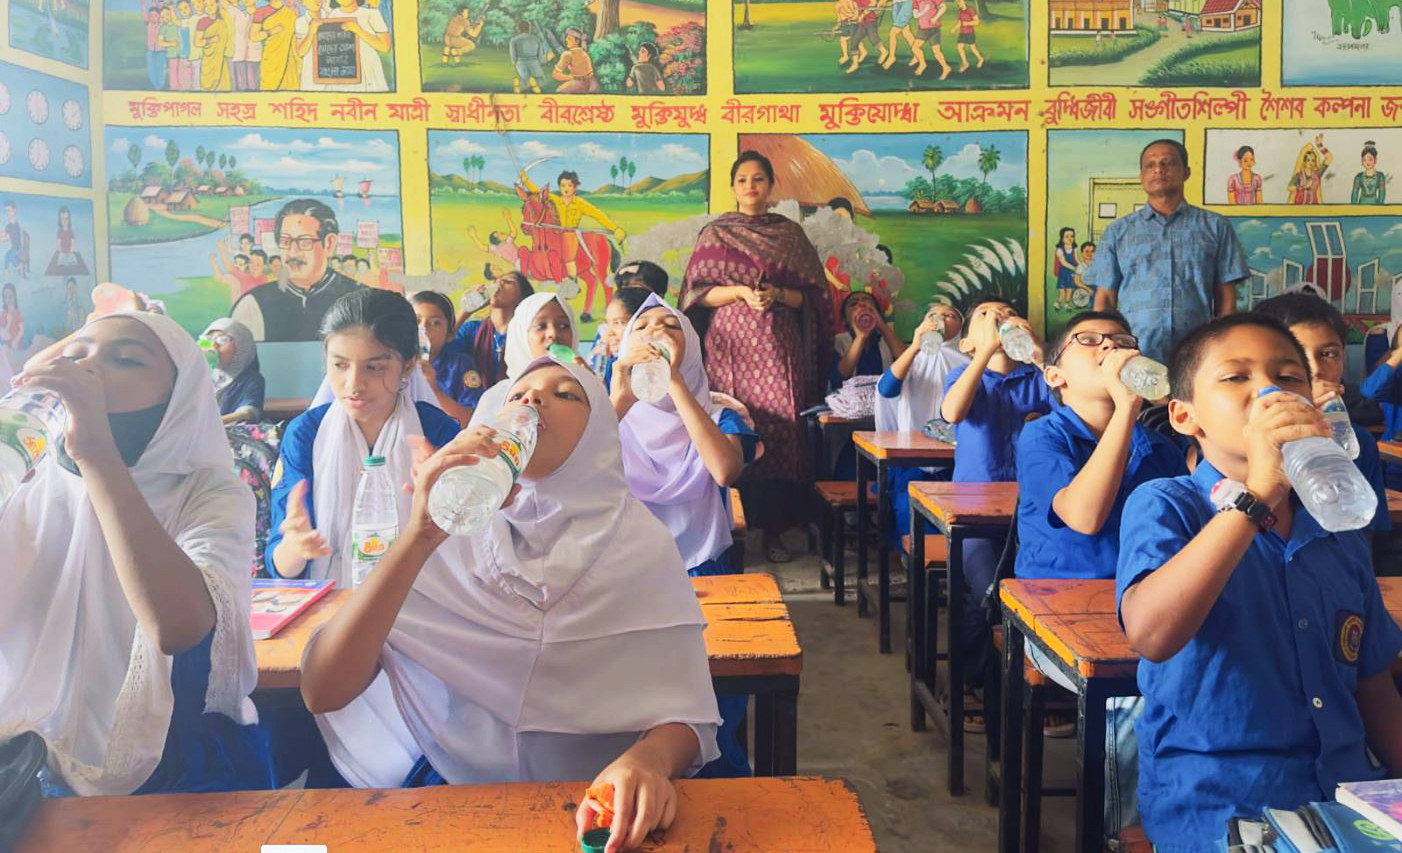 কুমিল্লা জেলা প্রশাসকের নির্দেশে শিক্ষার্থীদের জন্য চালু হলো ‘পানি ঘণ্টা’